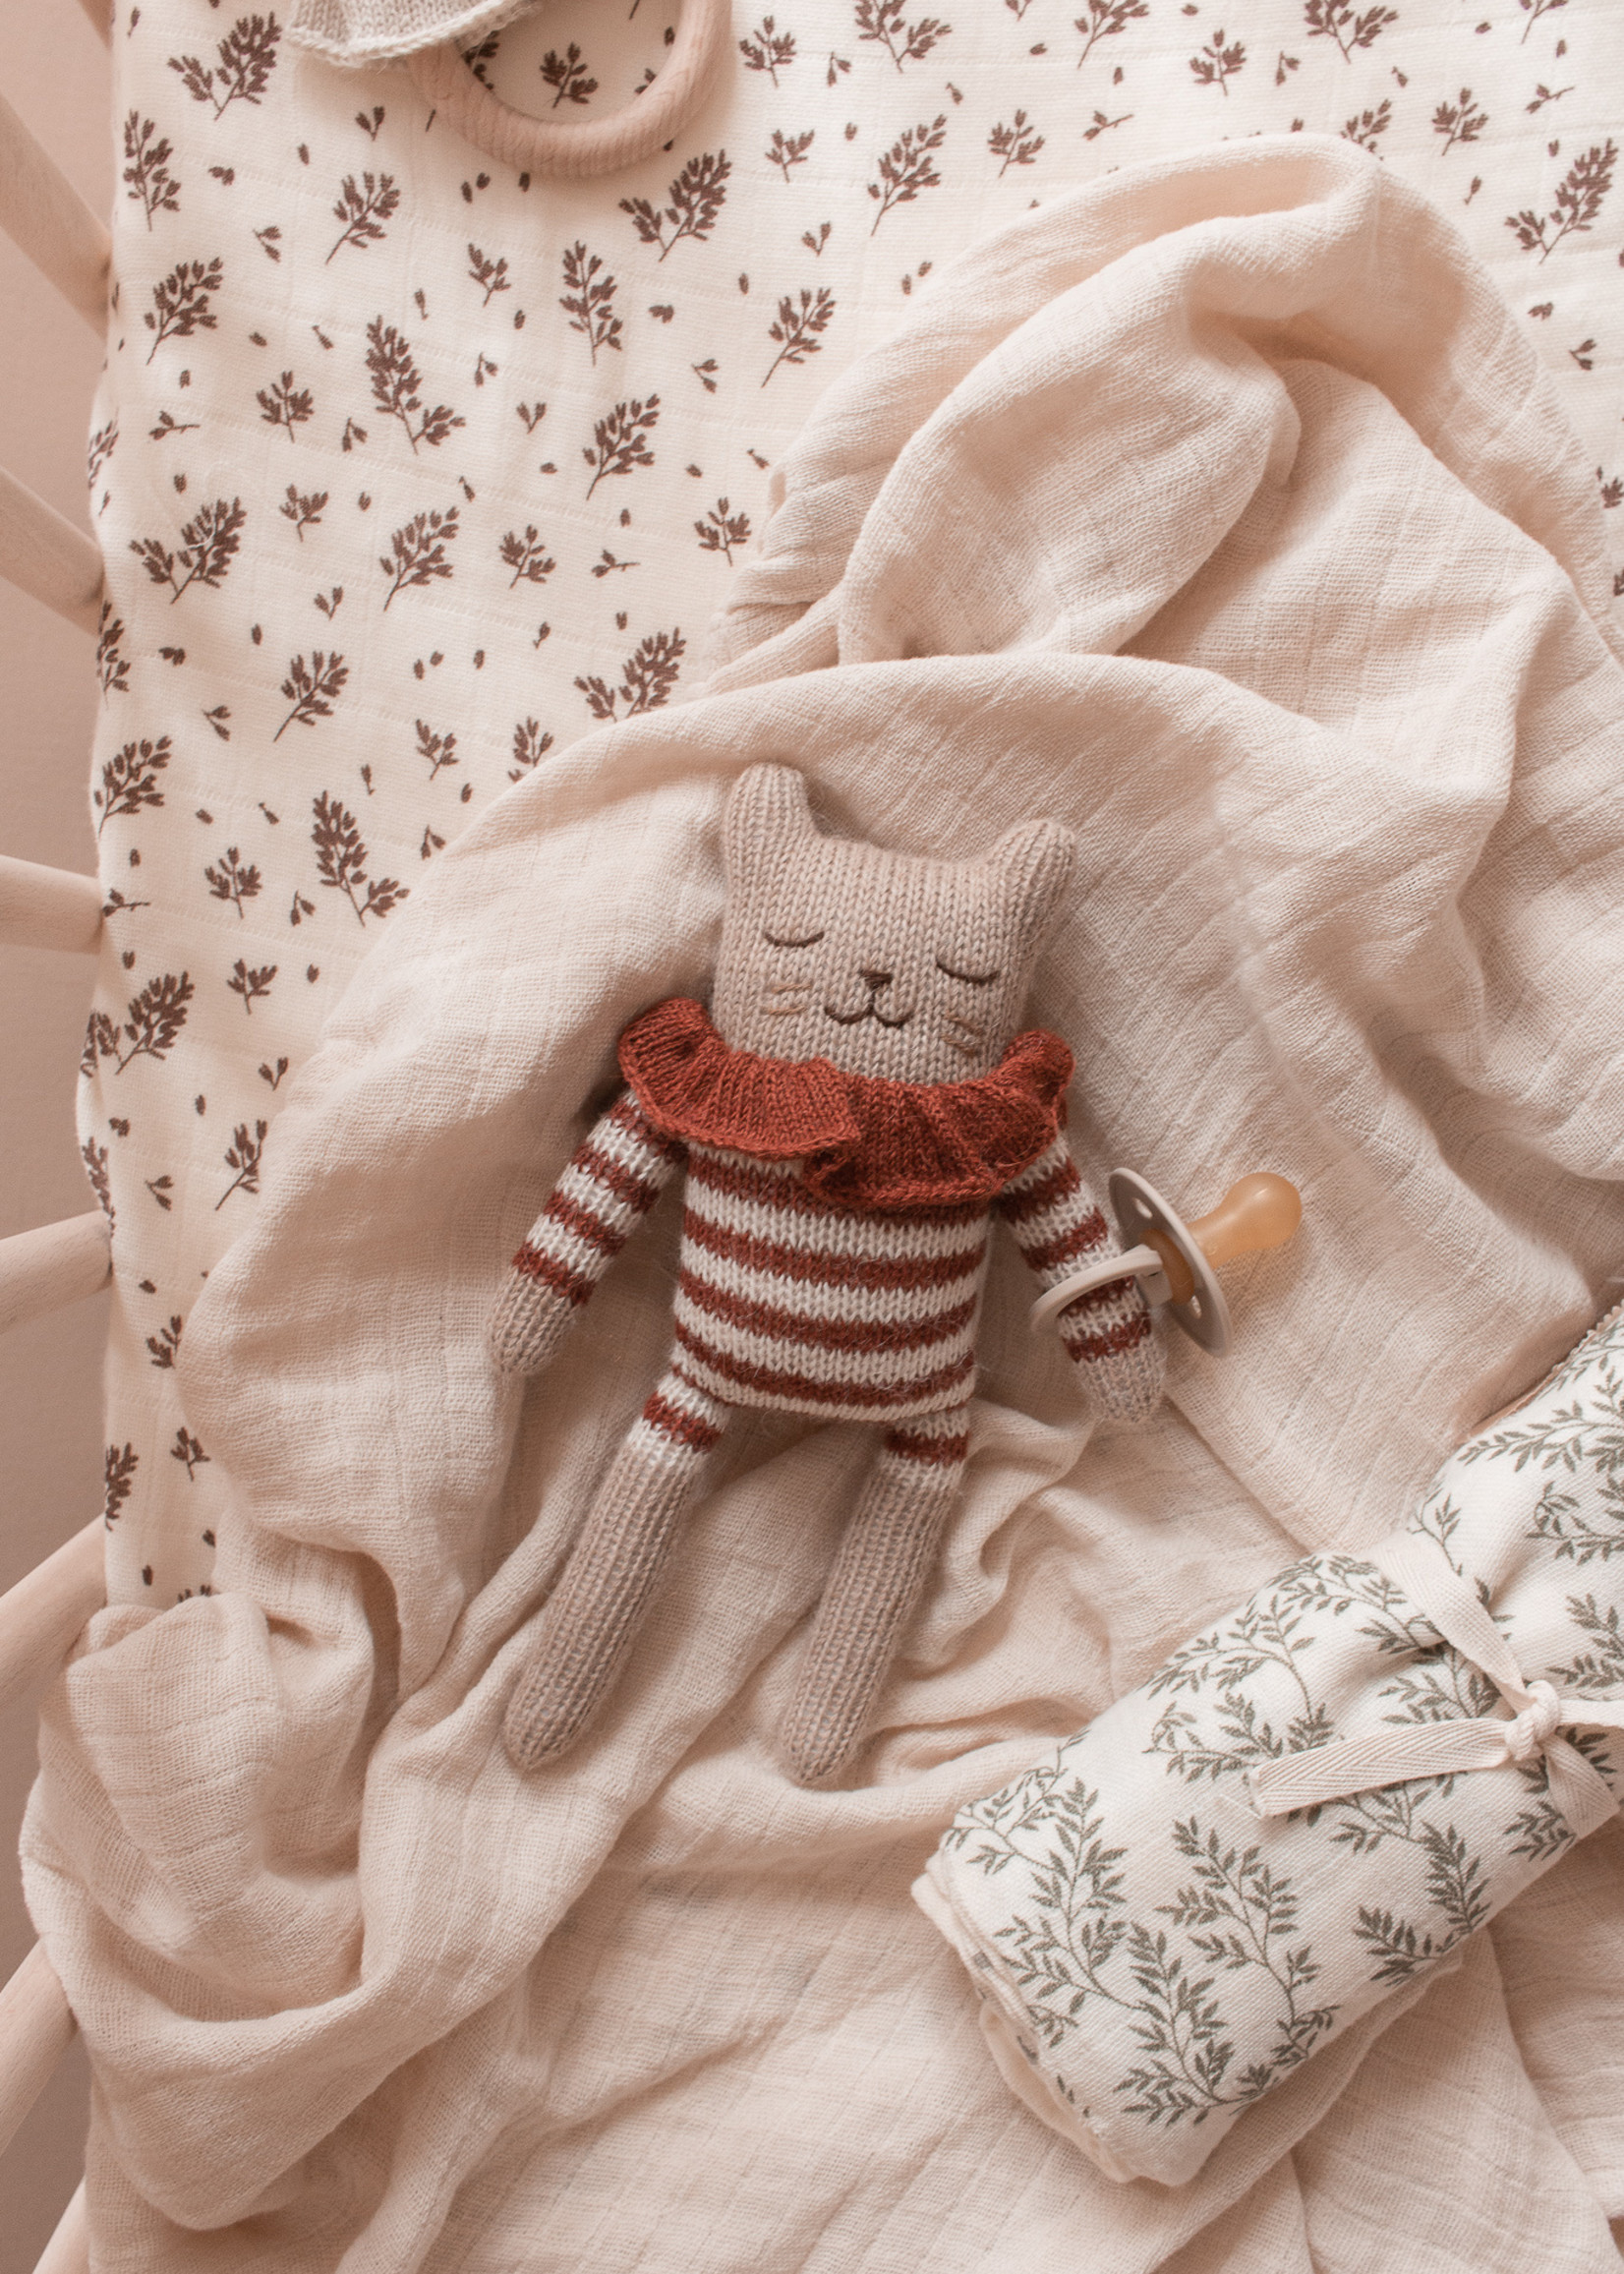 Main Sauvage Kitten Knit Toy | Sienna Striped Romper